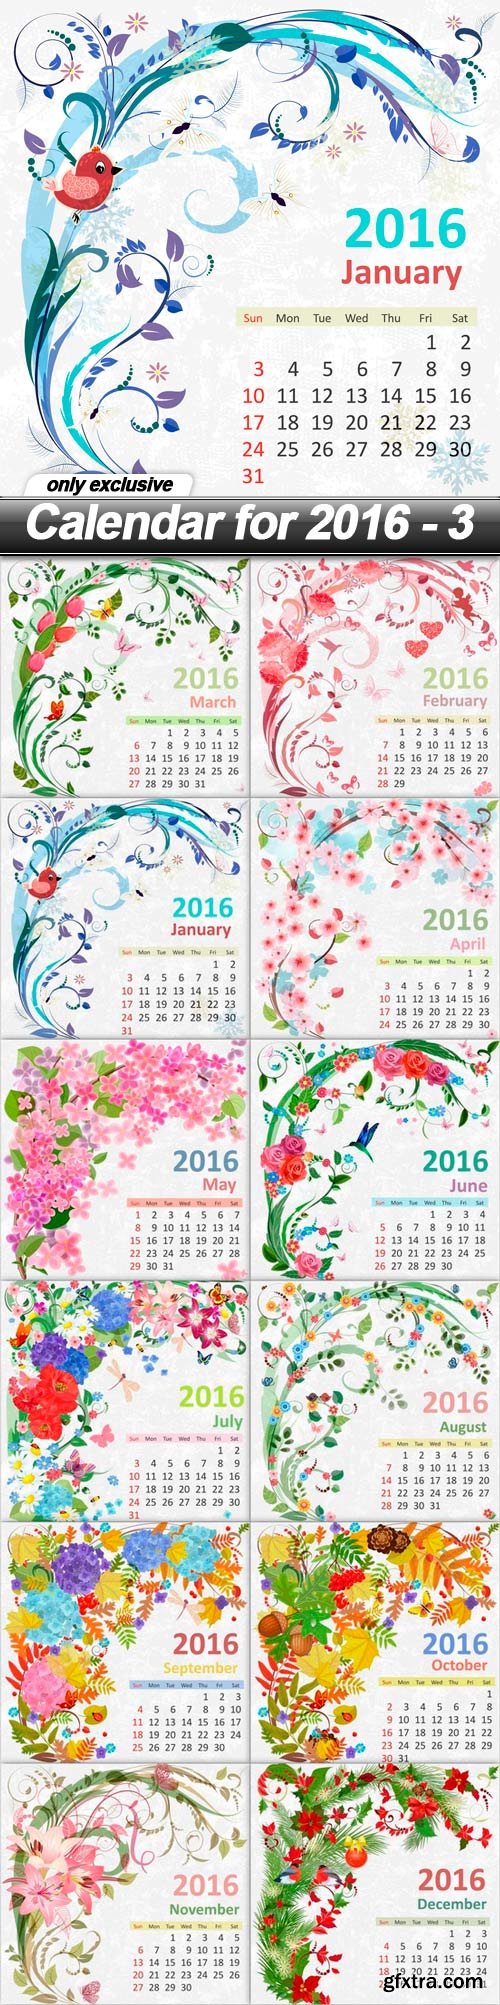 Calendar for 2016 - 3 - 12 EPS